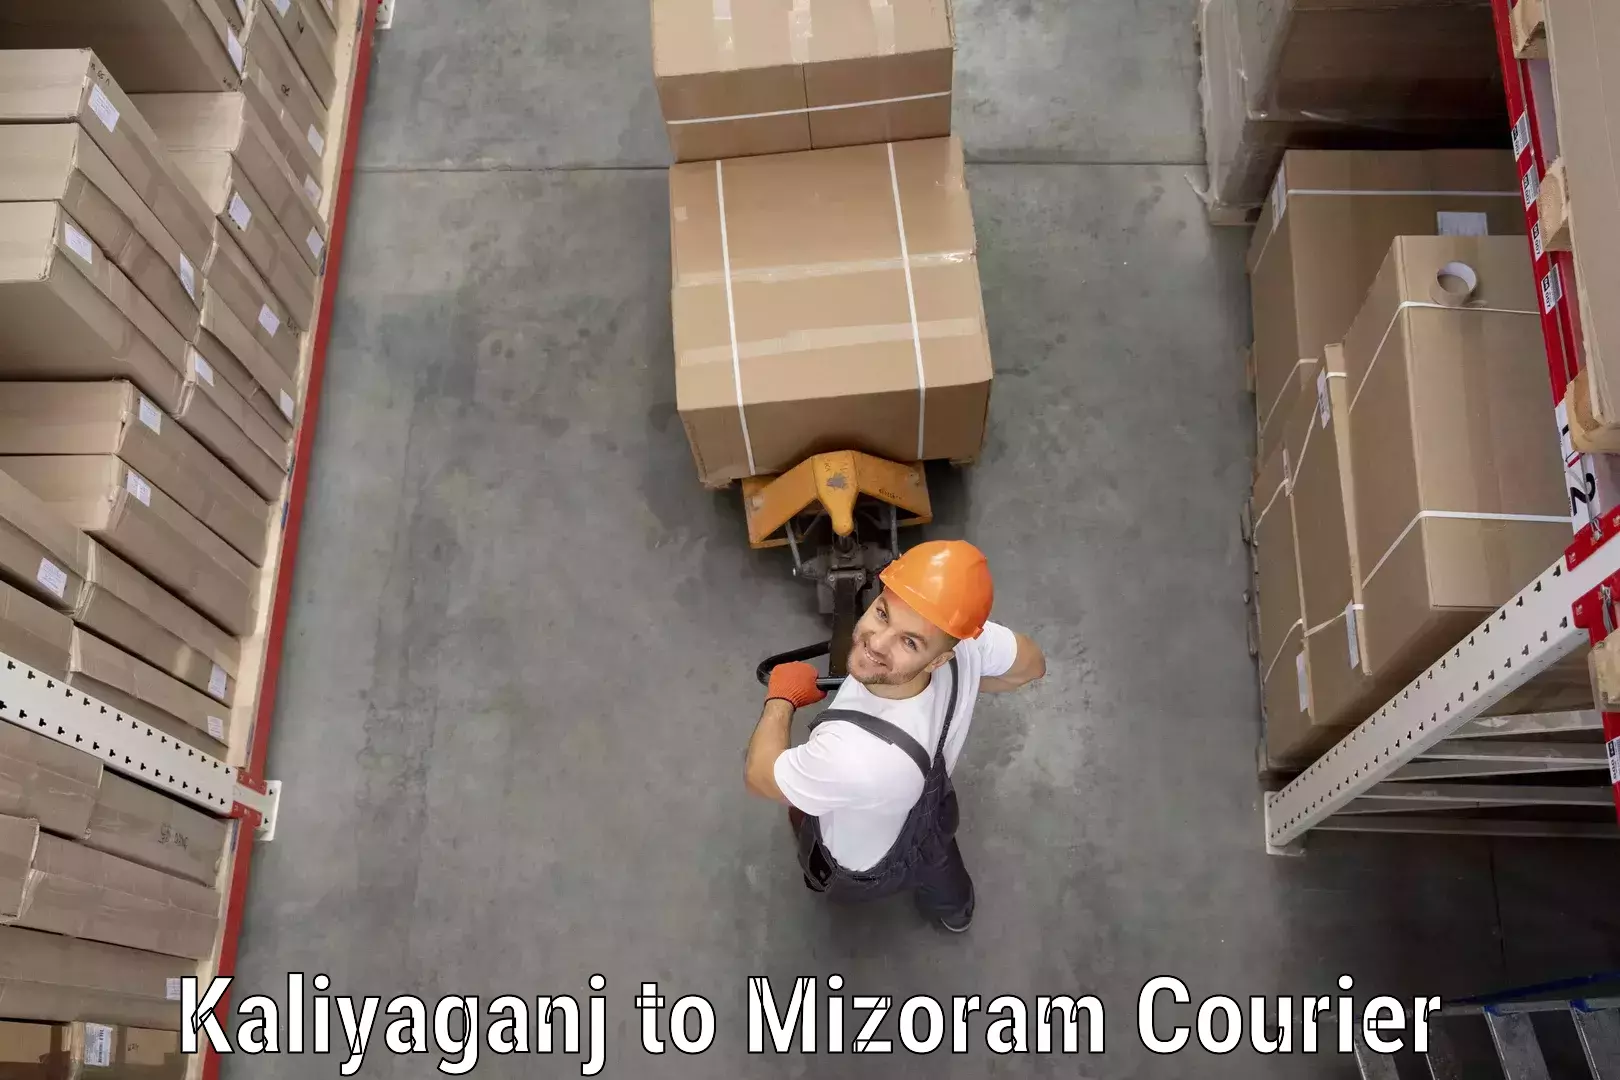 Courier insurance Kaliyaganj to Mizoram